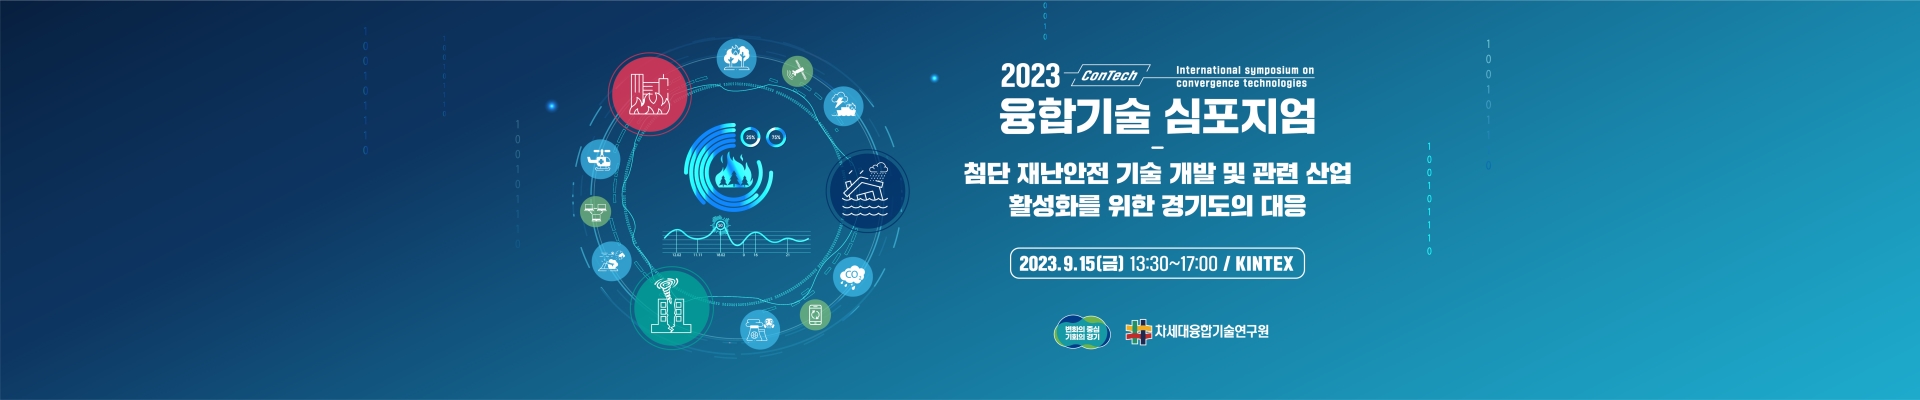 2023년 융합기술심포지엄 (ConTech 2023)